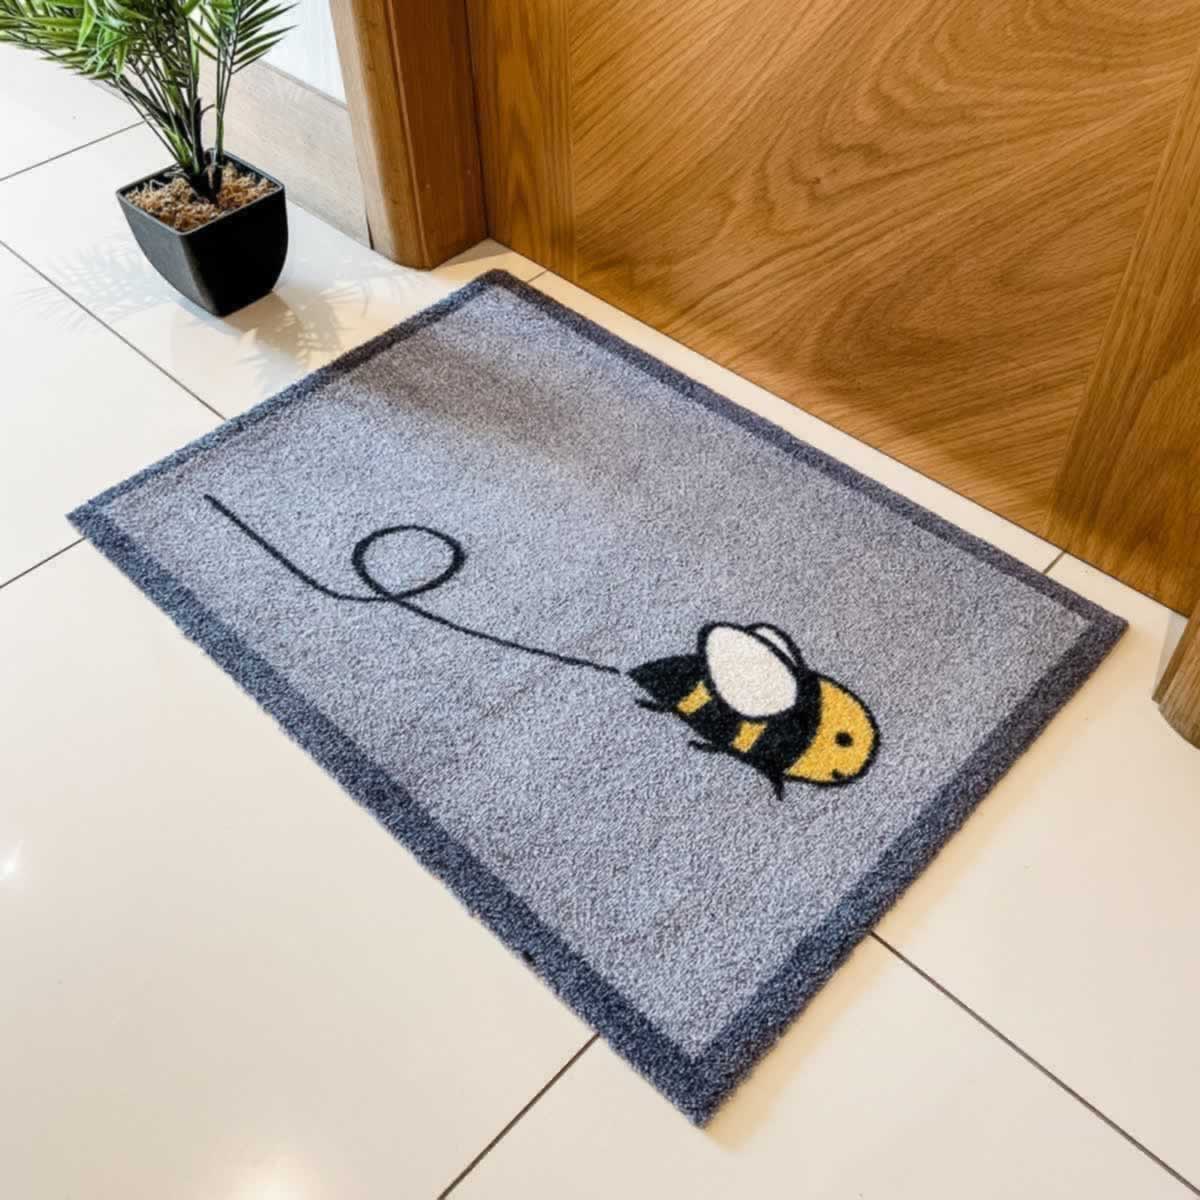 Bee Doormat in Hallway